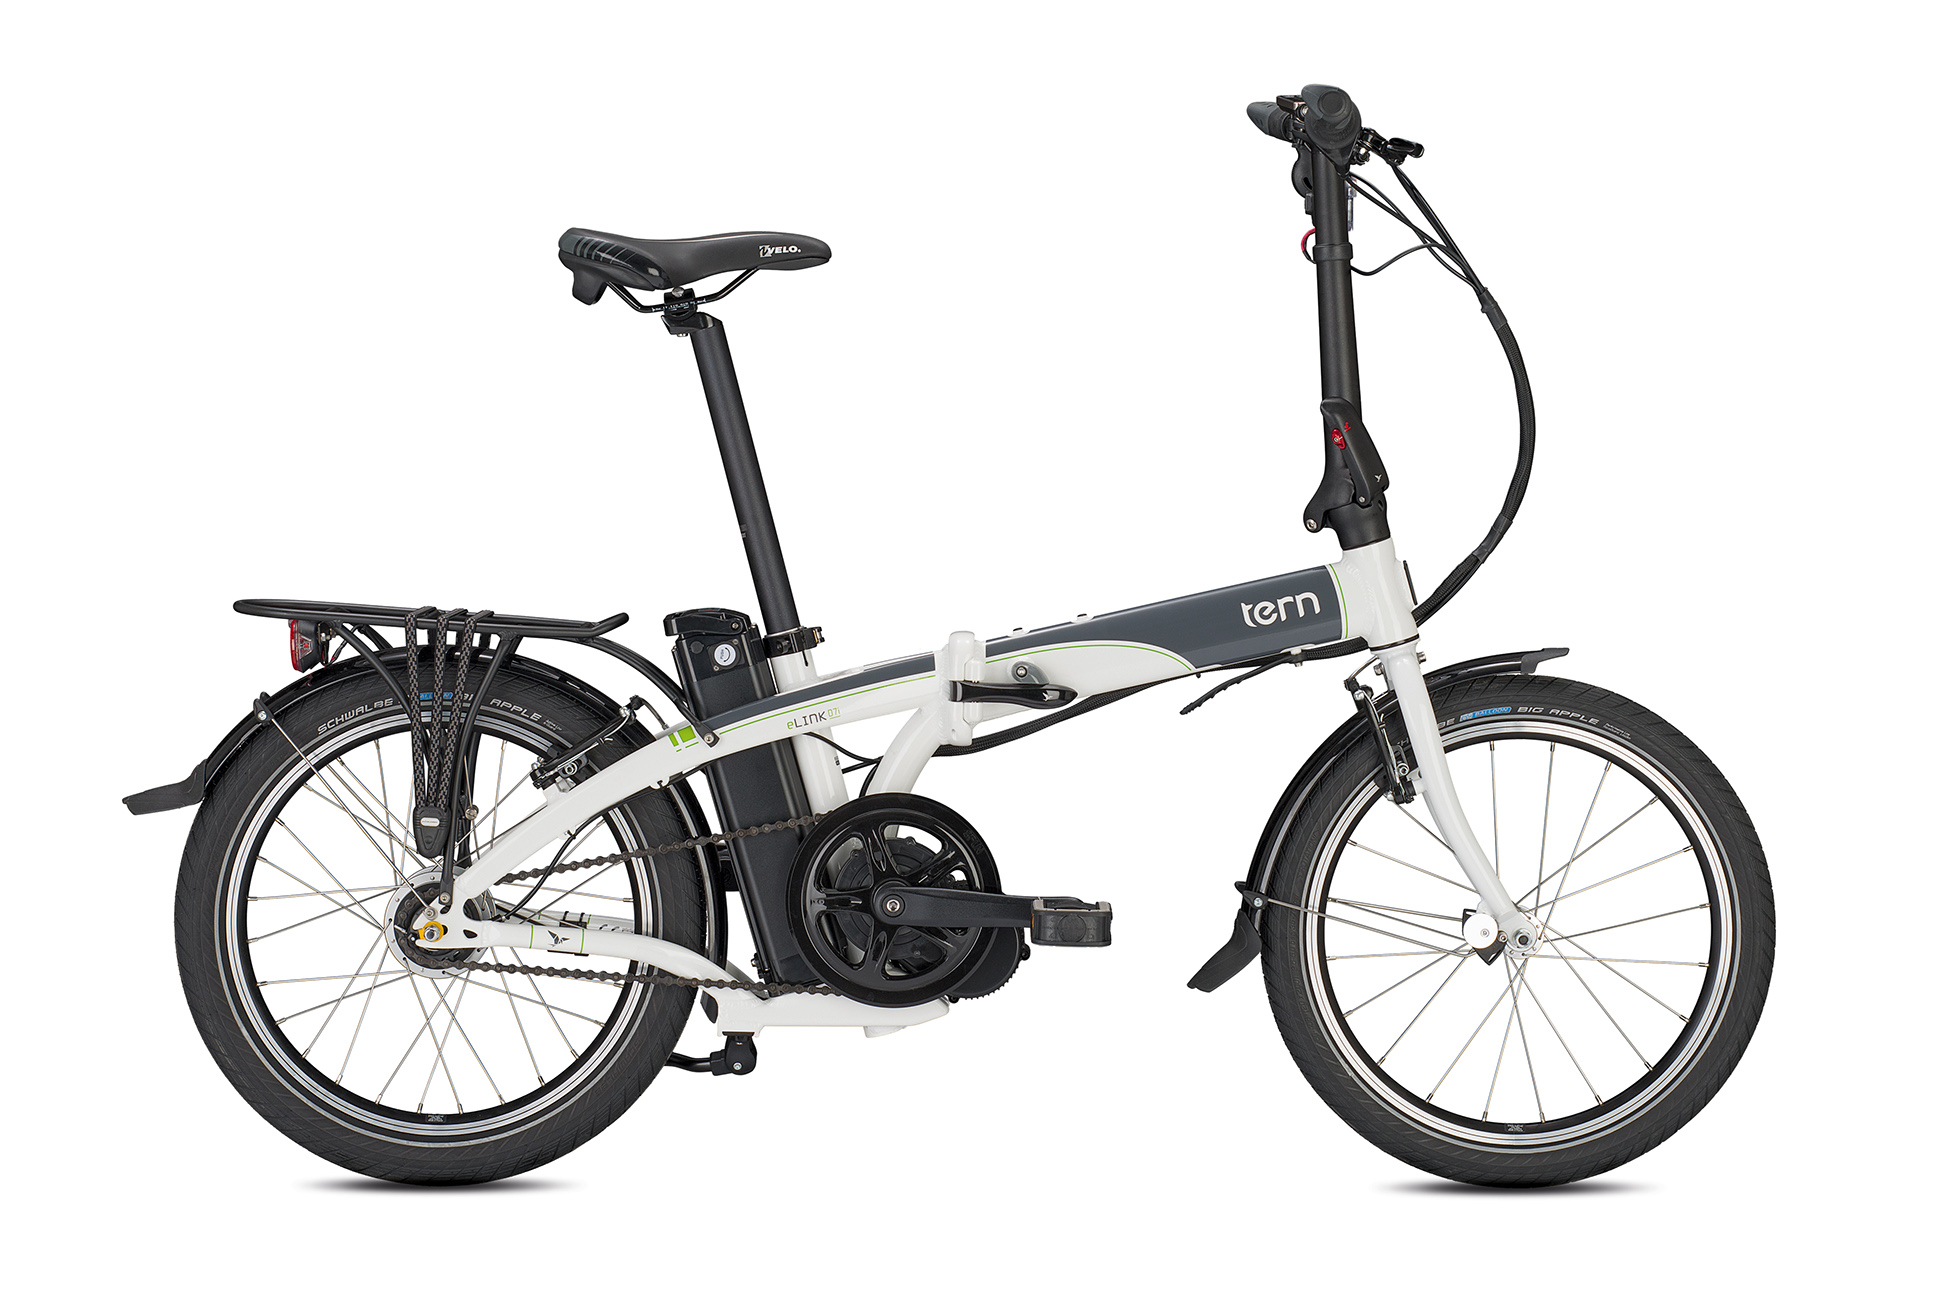 tern electric folding bike